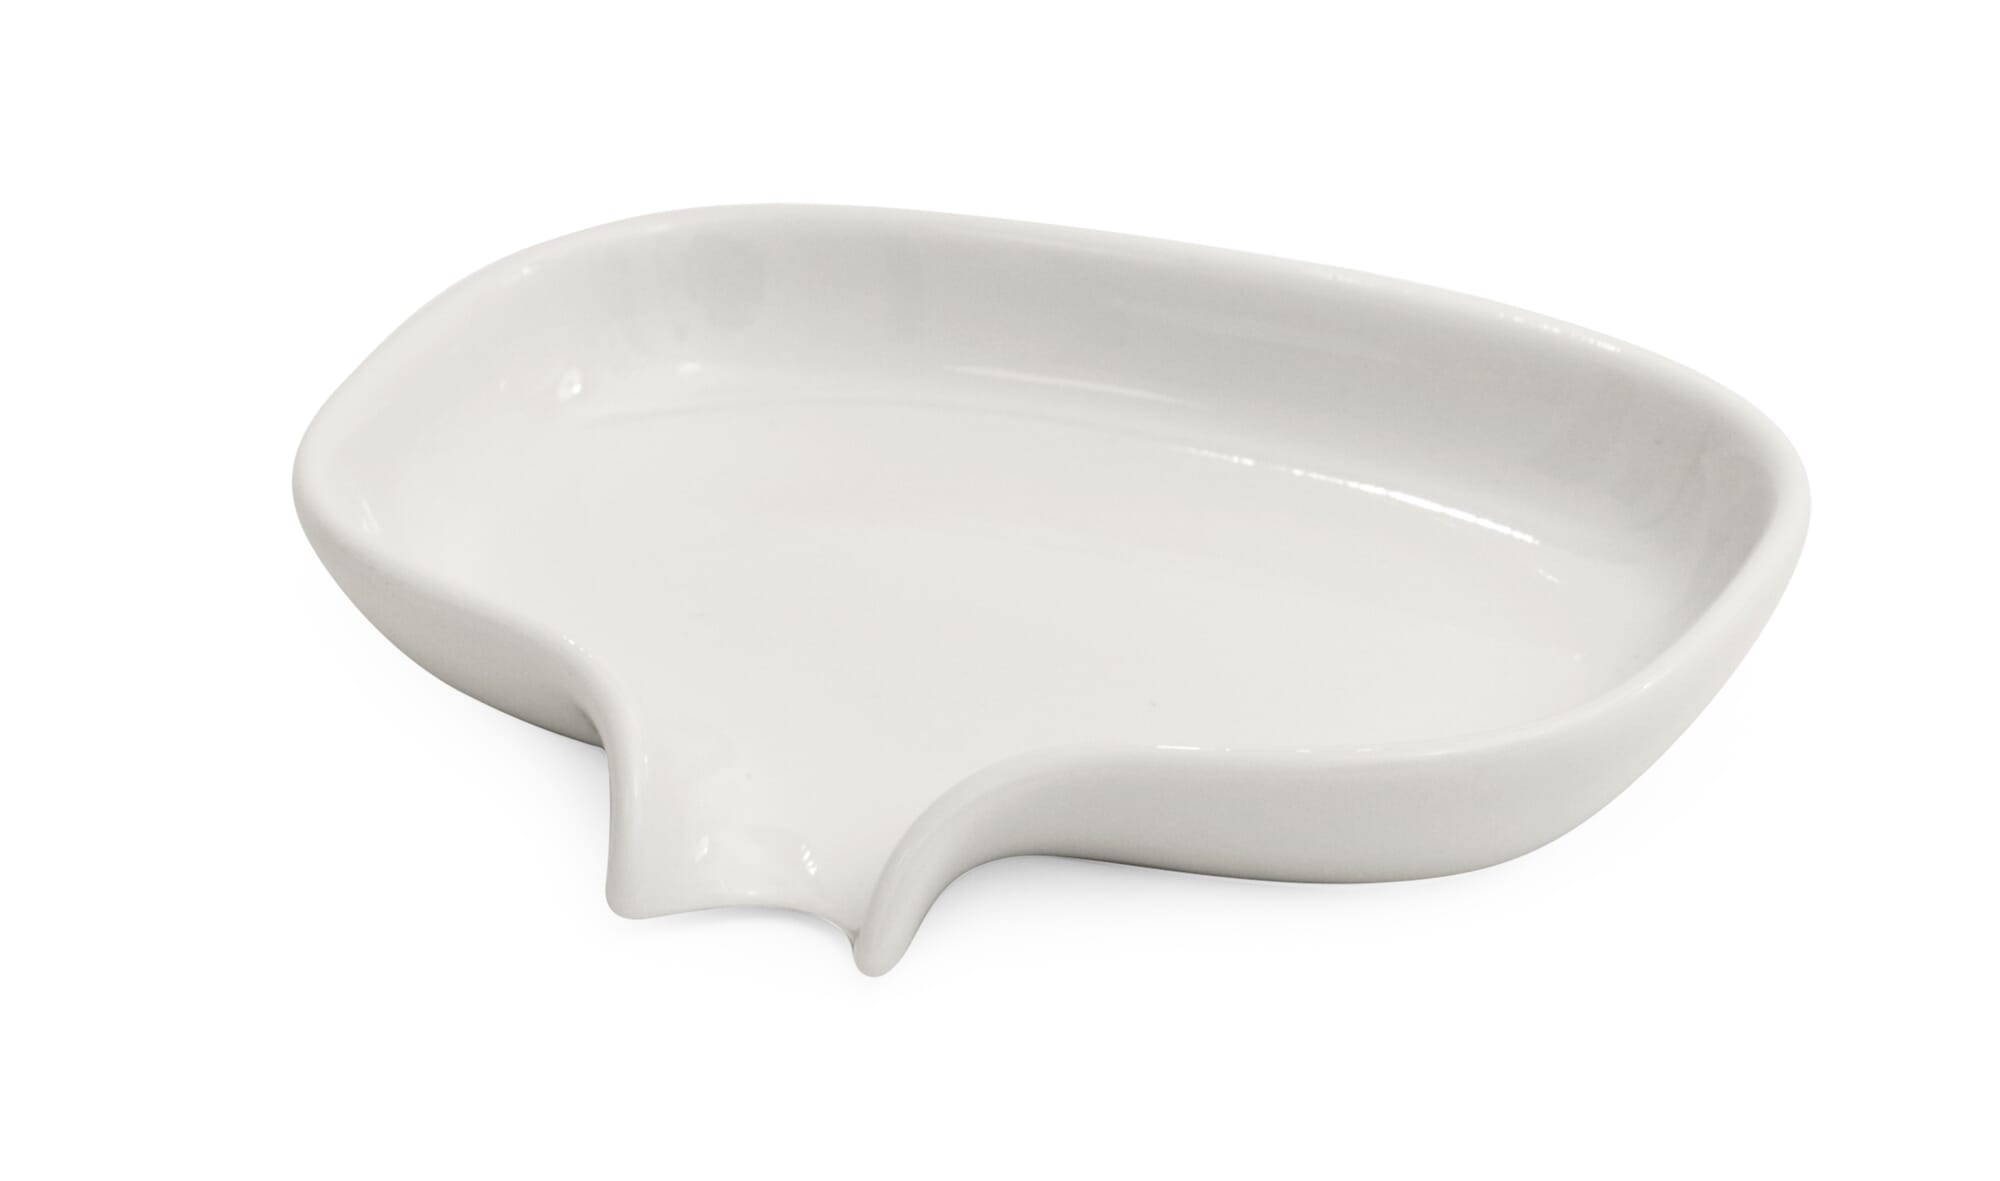 https://assets.manufactum.de/p/018/018495/18495_01.jpg/soap-dish-porcelain.jpg